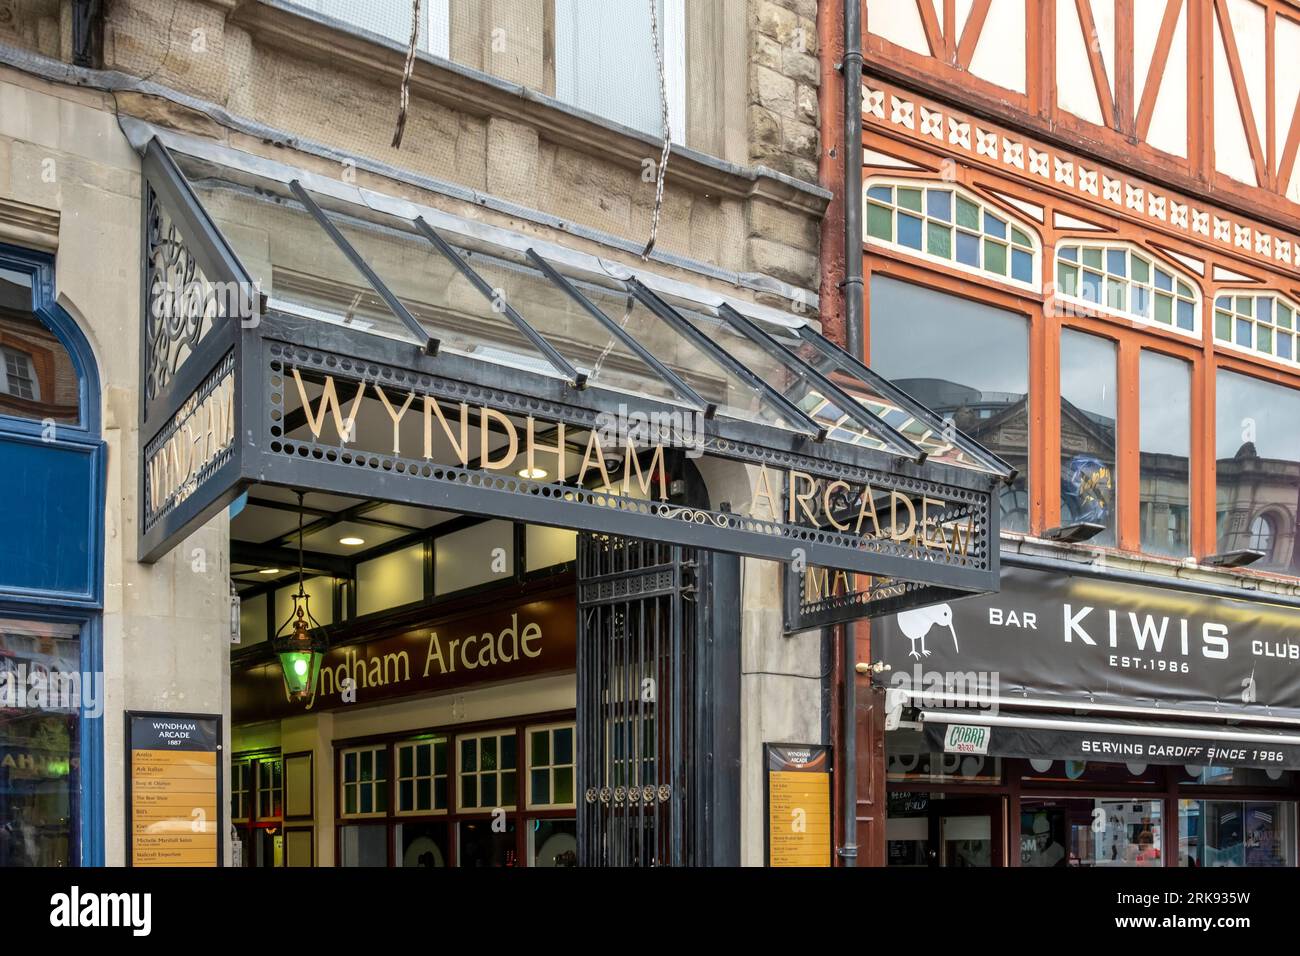 Segui l'ingresso al Wyndham Arcade, uno dei numerosi centri commerciali vittoriani nel centro di Cardiff. Foto Stock